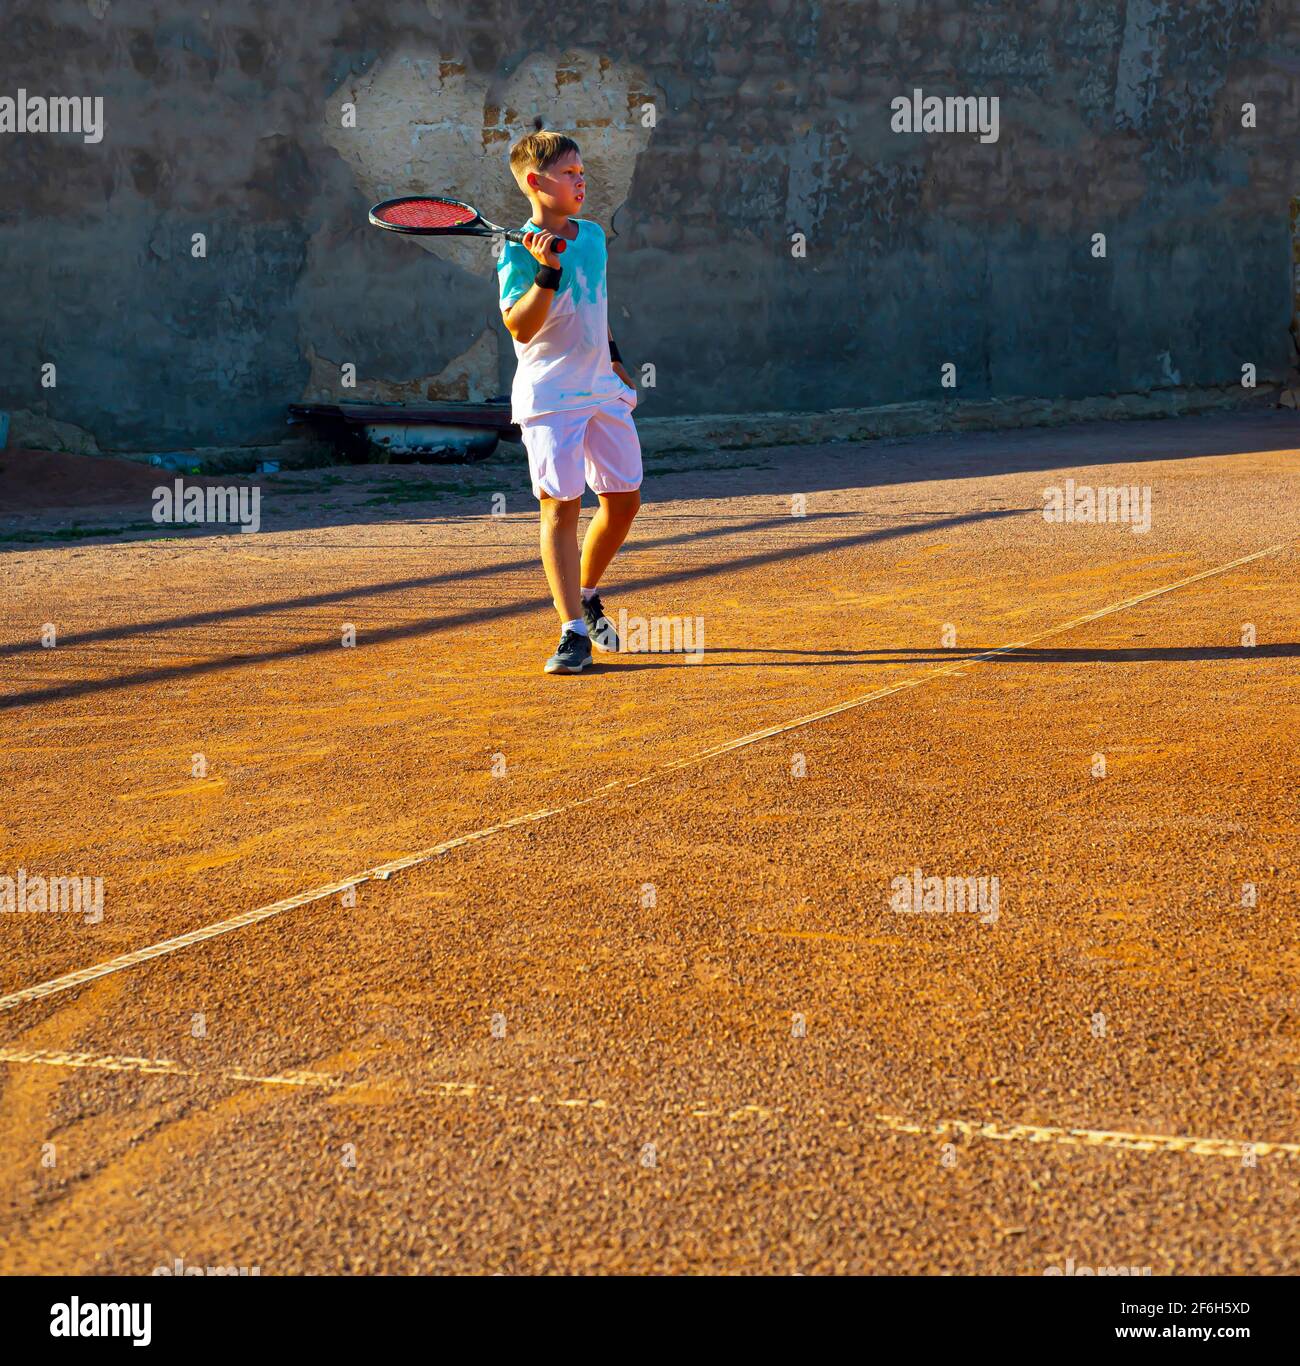 Junger Teenager-Tennisspieler auf einem Sandplatz. Es ist ein Herz an der Wand. Professionelles Tennistraining. Liebe zum Sport. Stockfoto